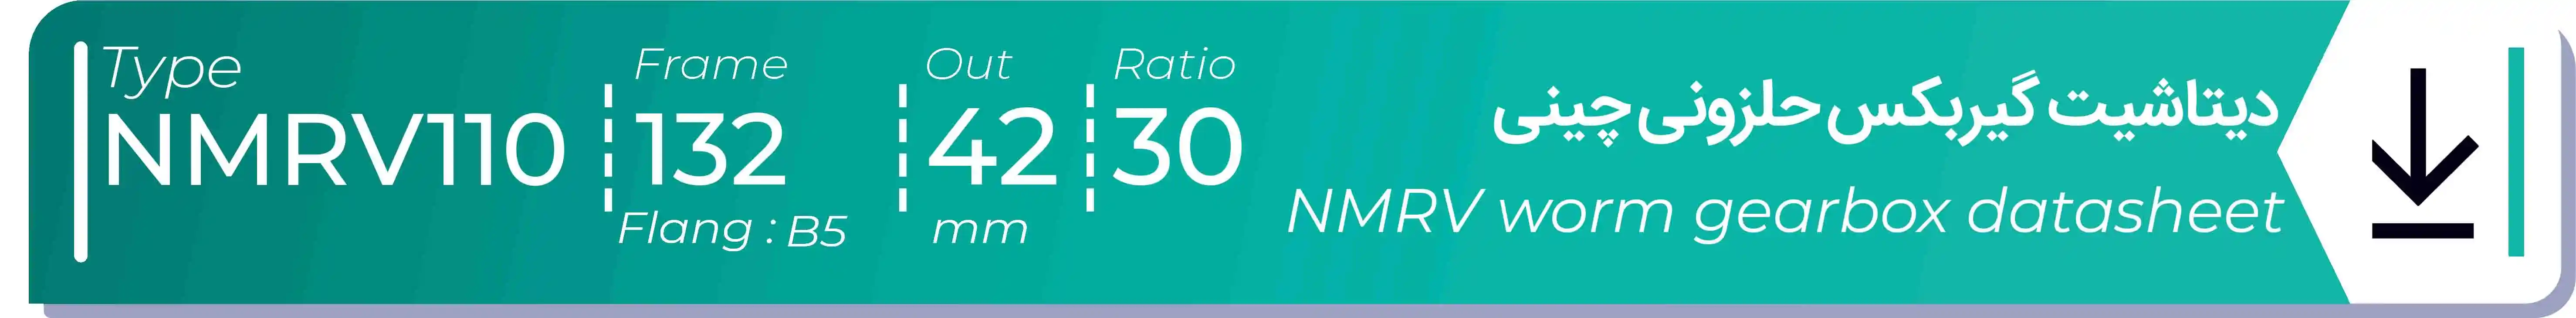  دیتاشیت و مشخصات فنی گیربکس حلزونی چینی   NMRV110  -  با خروجی 42- میلی متر و نسبت30 و فریم 132